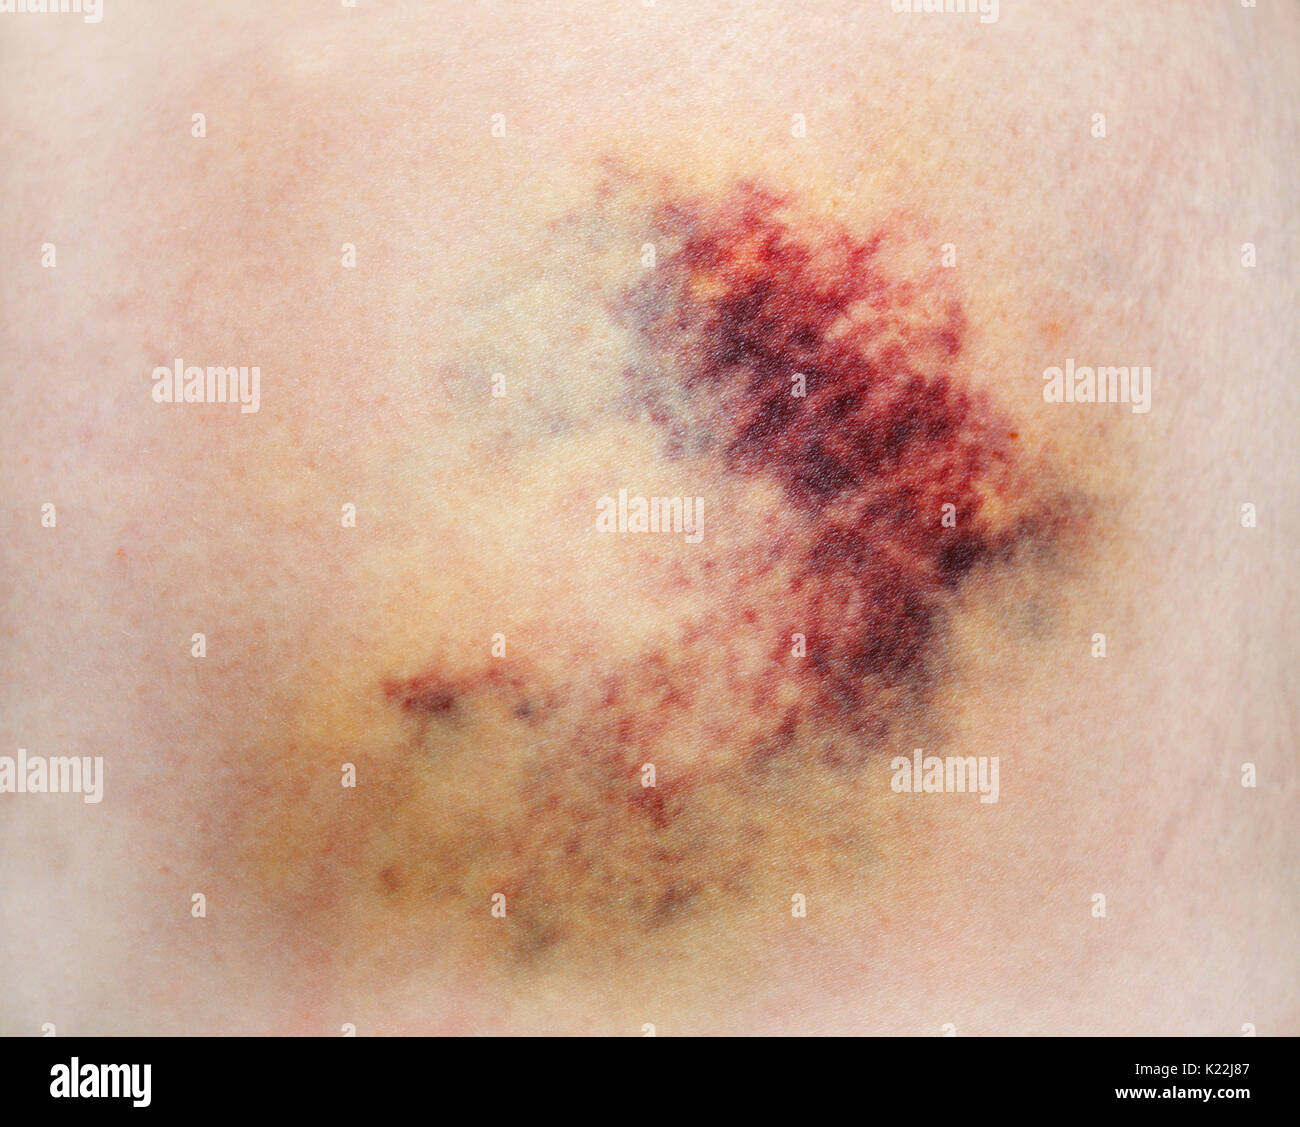 Bruise on white skin. Close-up photo Stock Photo